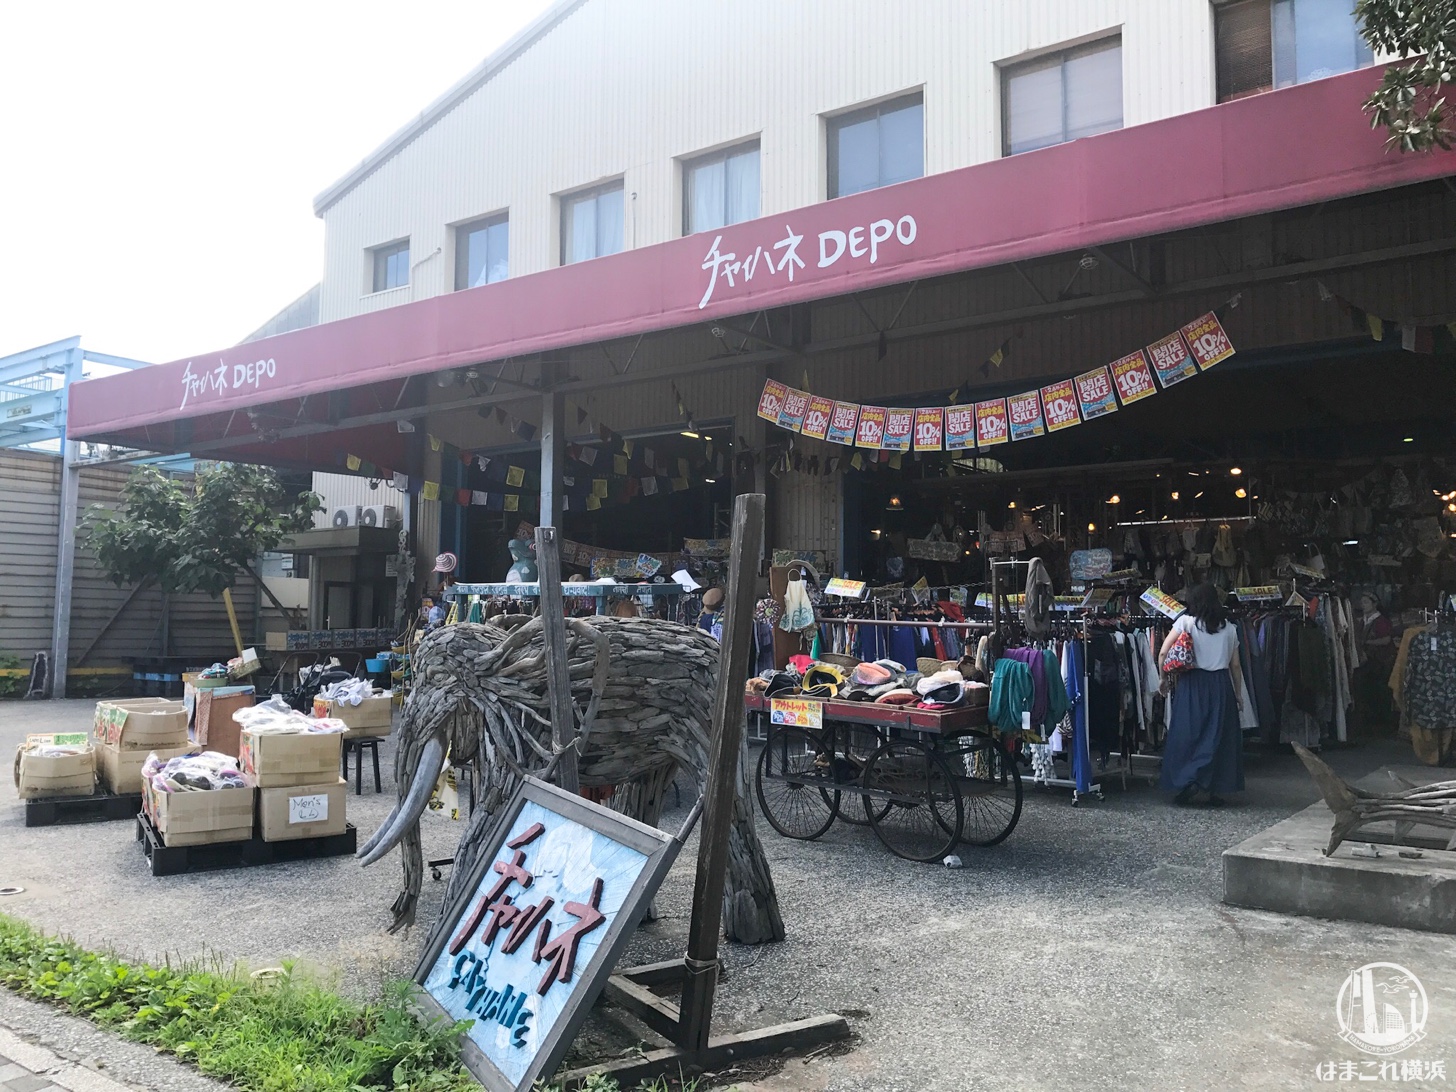 チャイハネ DEPO 横浜ベイサイド店が2018年9月25日に閉店